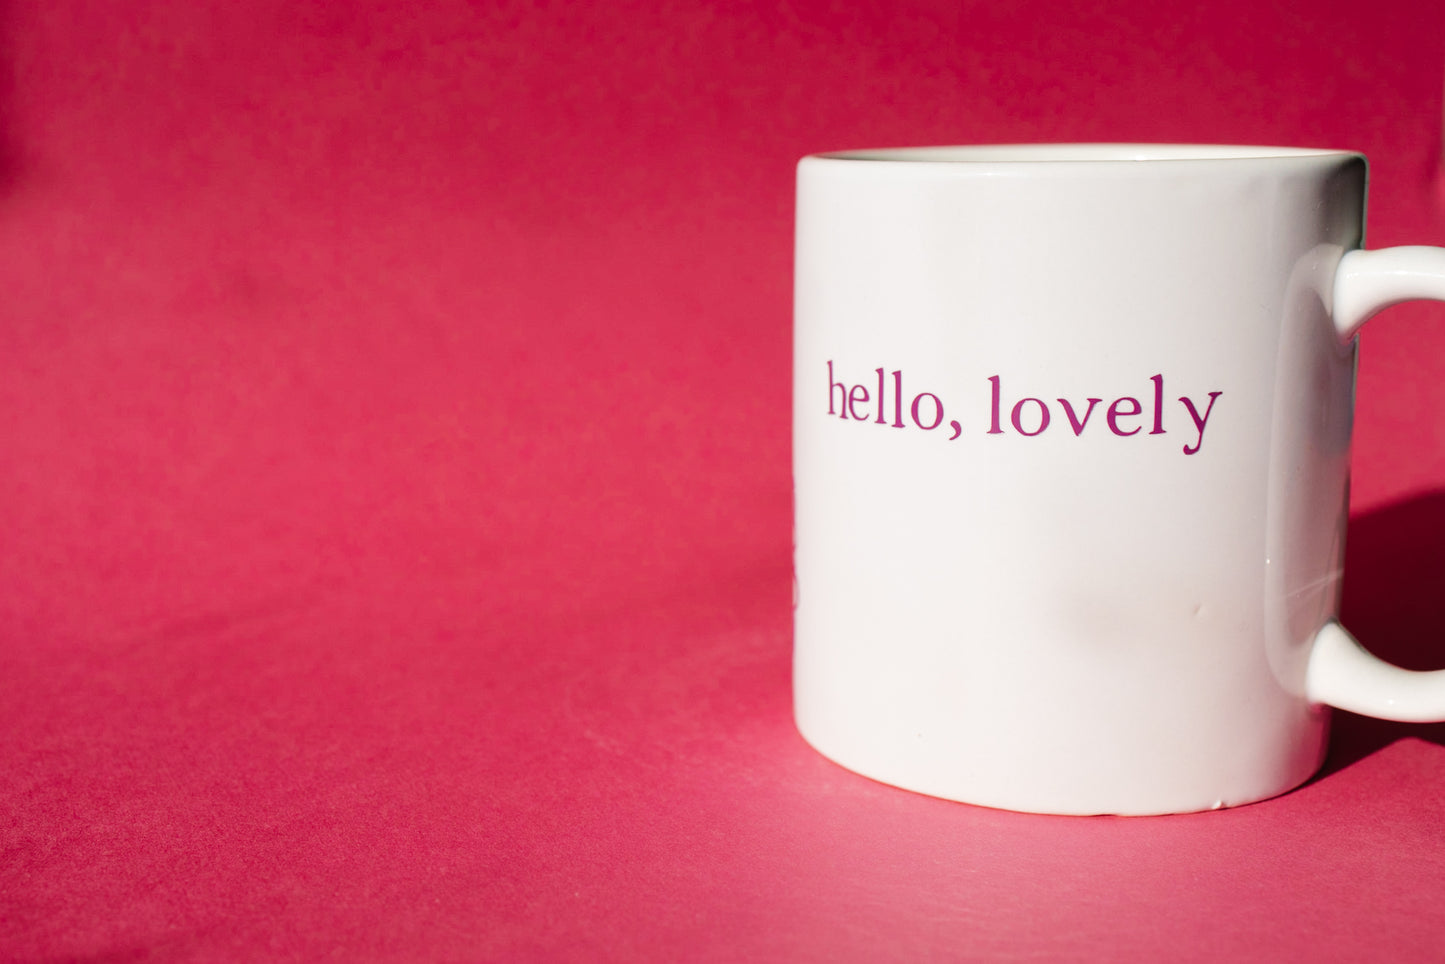 Hello, lovely mug